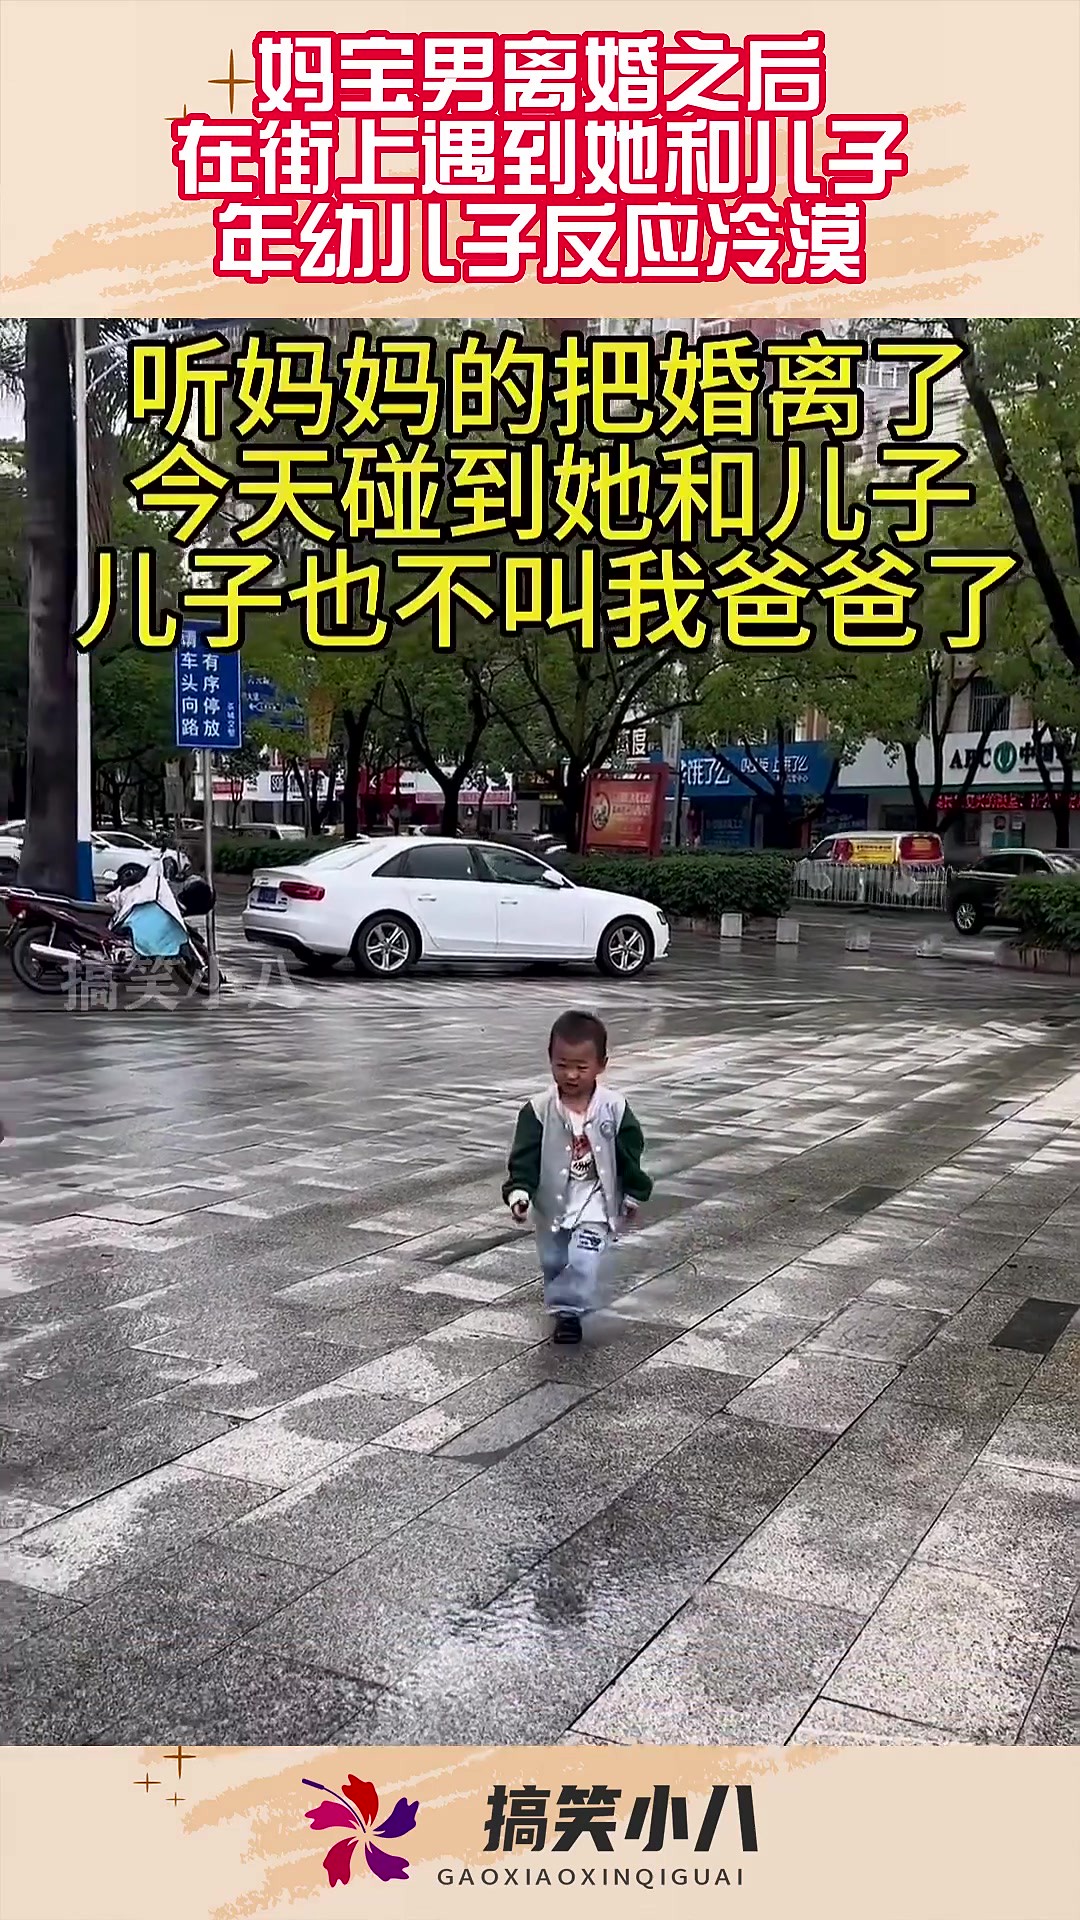 妈宝男离婚之后，在街上遇到她和儿子，年幼儿子反应冷漠！#搞笑 #奇趣 #社会 #搞笑段子 